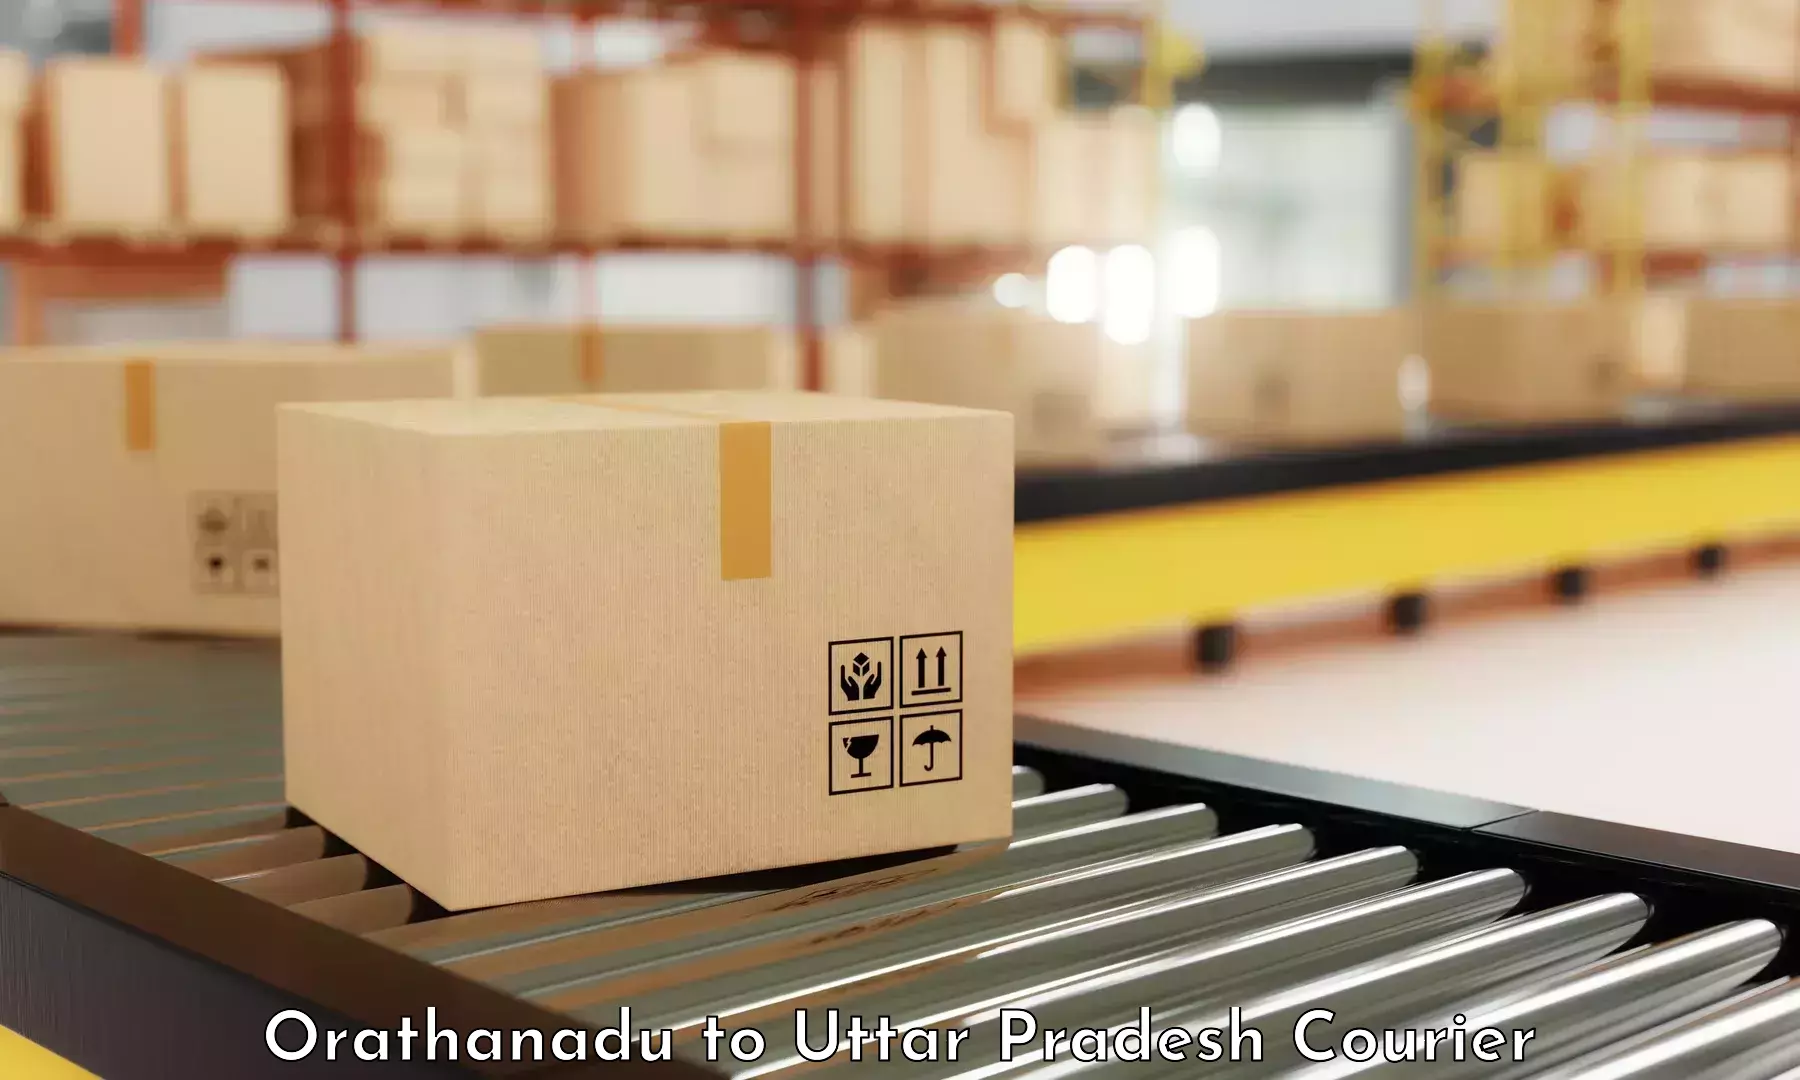 Secure package delivery Orathanadu to Kurebhar